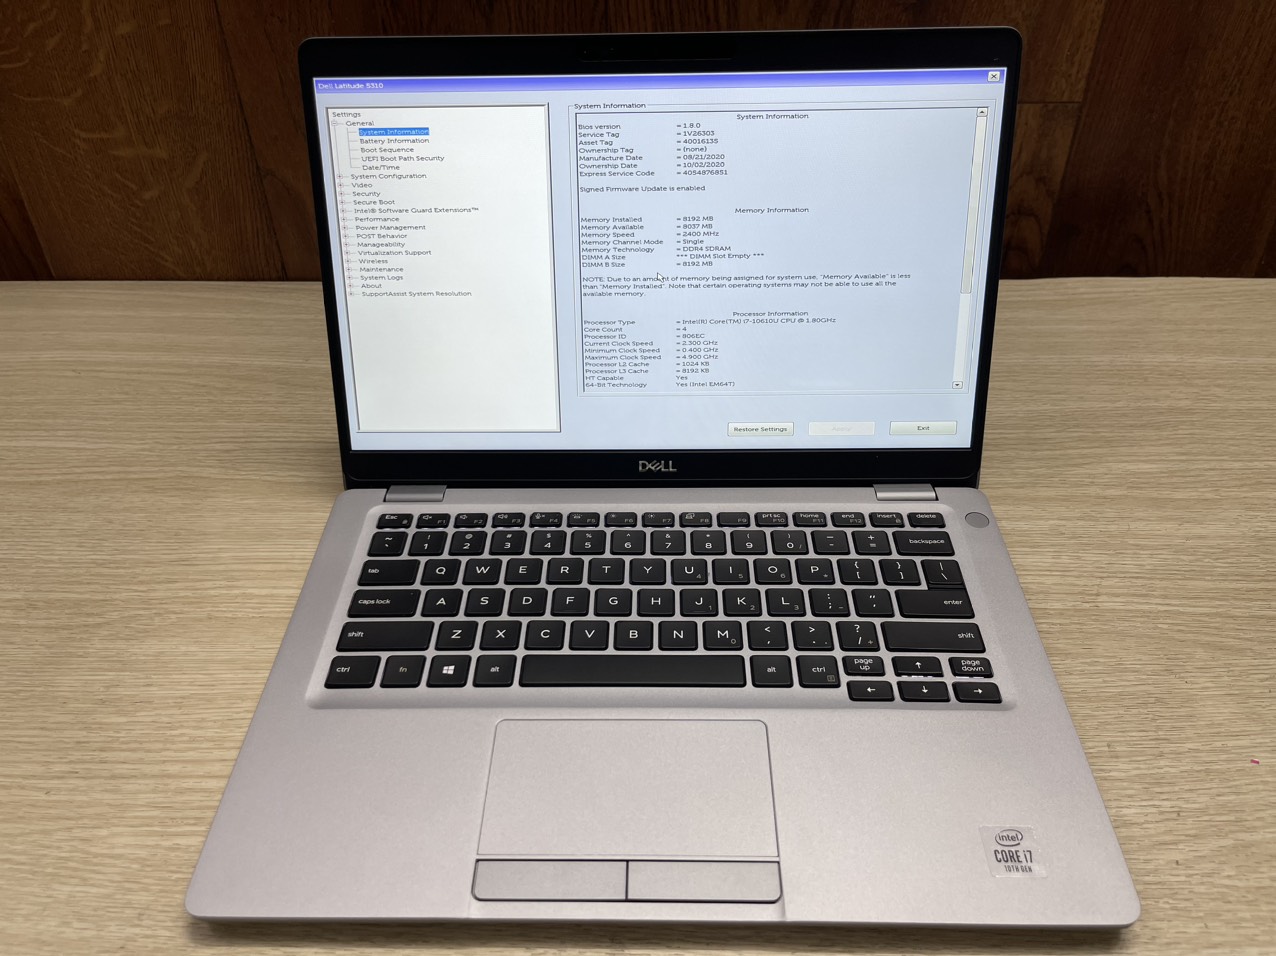 Lê Nguyễn PC - Địa Chỉ Tin Cậy Cho Laptop Cũ Giá Rẻ Tại Bình Dương – Laptop Dell i5/i7 chỉ từ 4 - Ảnh 3